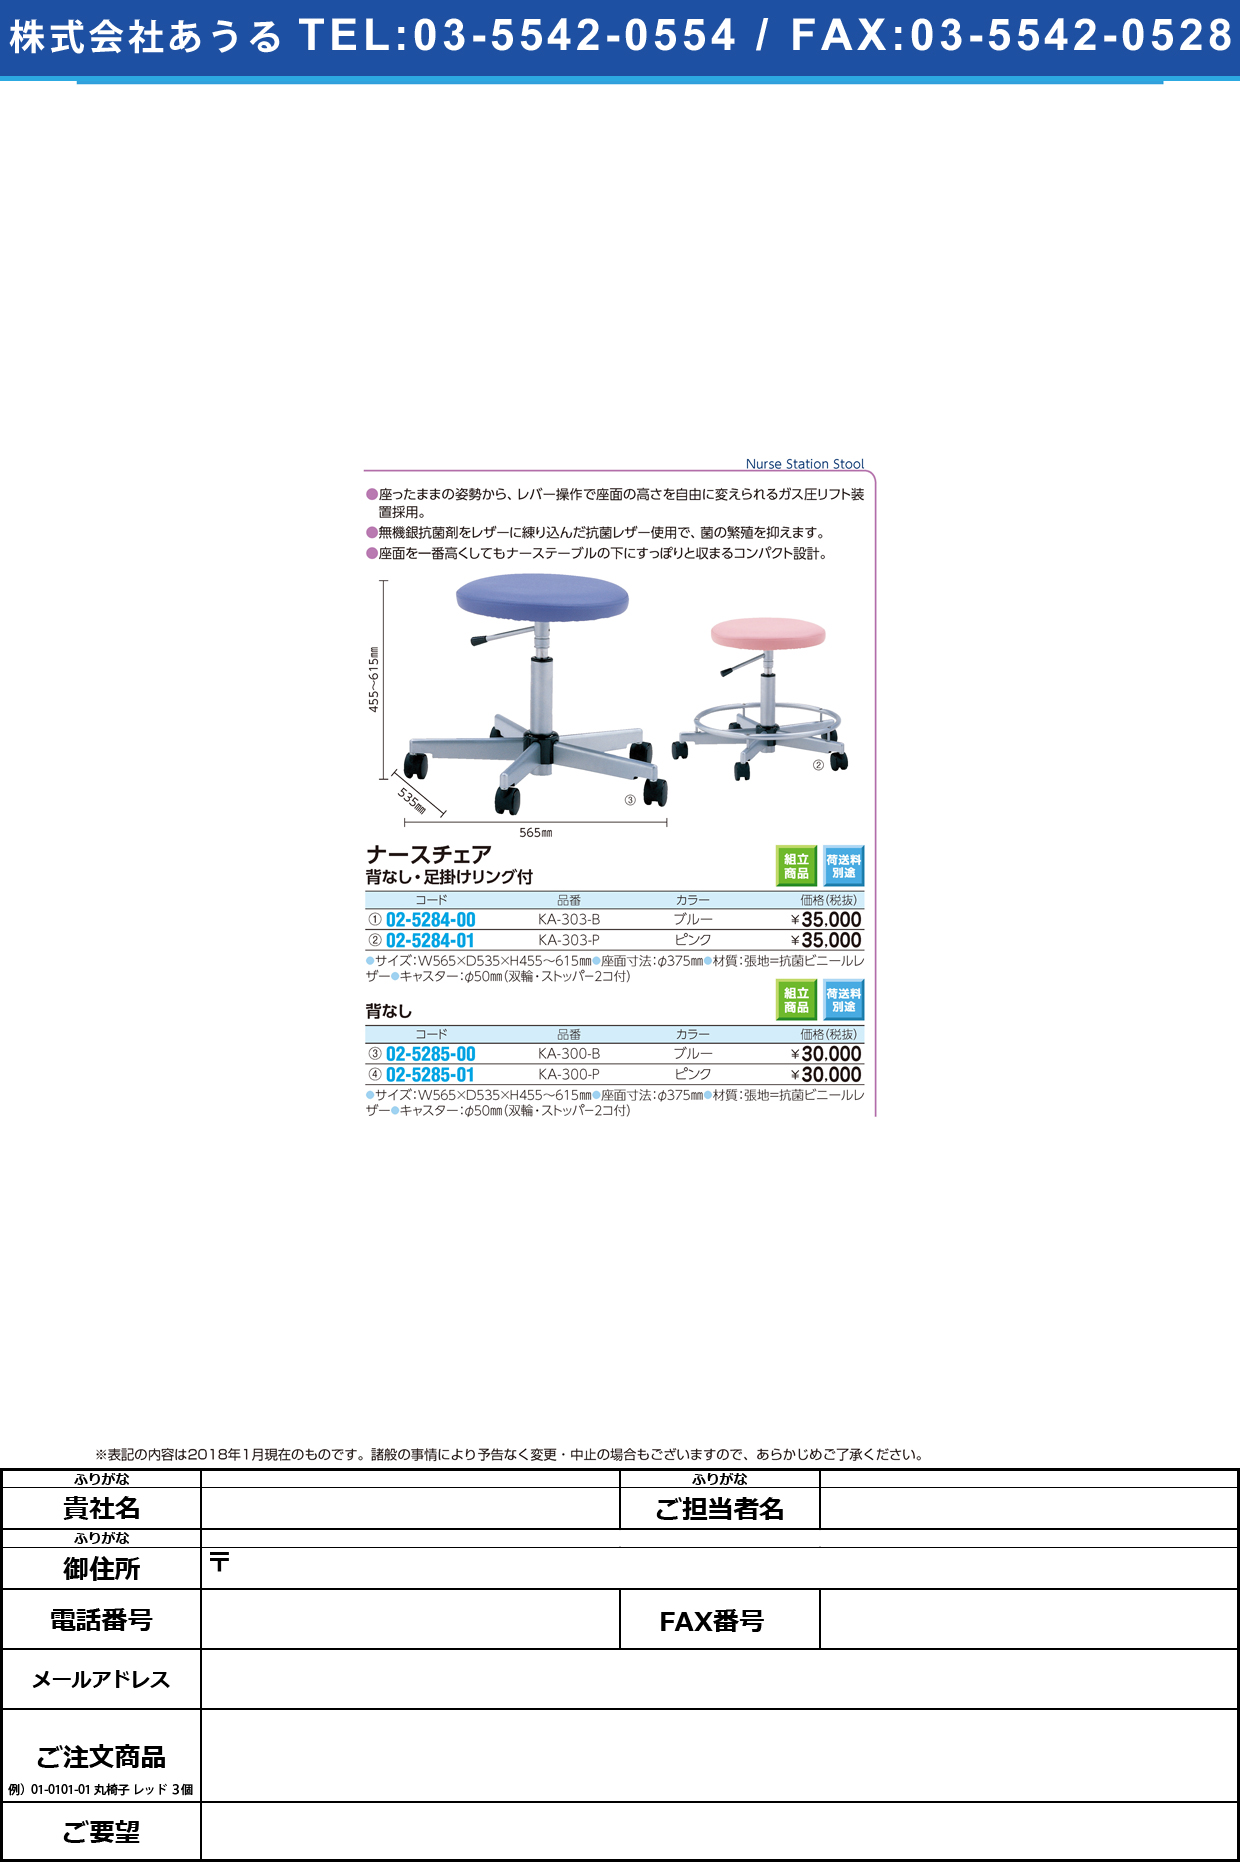 (02-5284-01)ナースステーションチェア KA-303-P(ﾋﾟﾝｸ) KA303P(ケルン)【1台単位】【2018年カタログ商品】